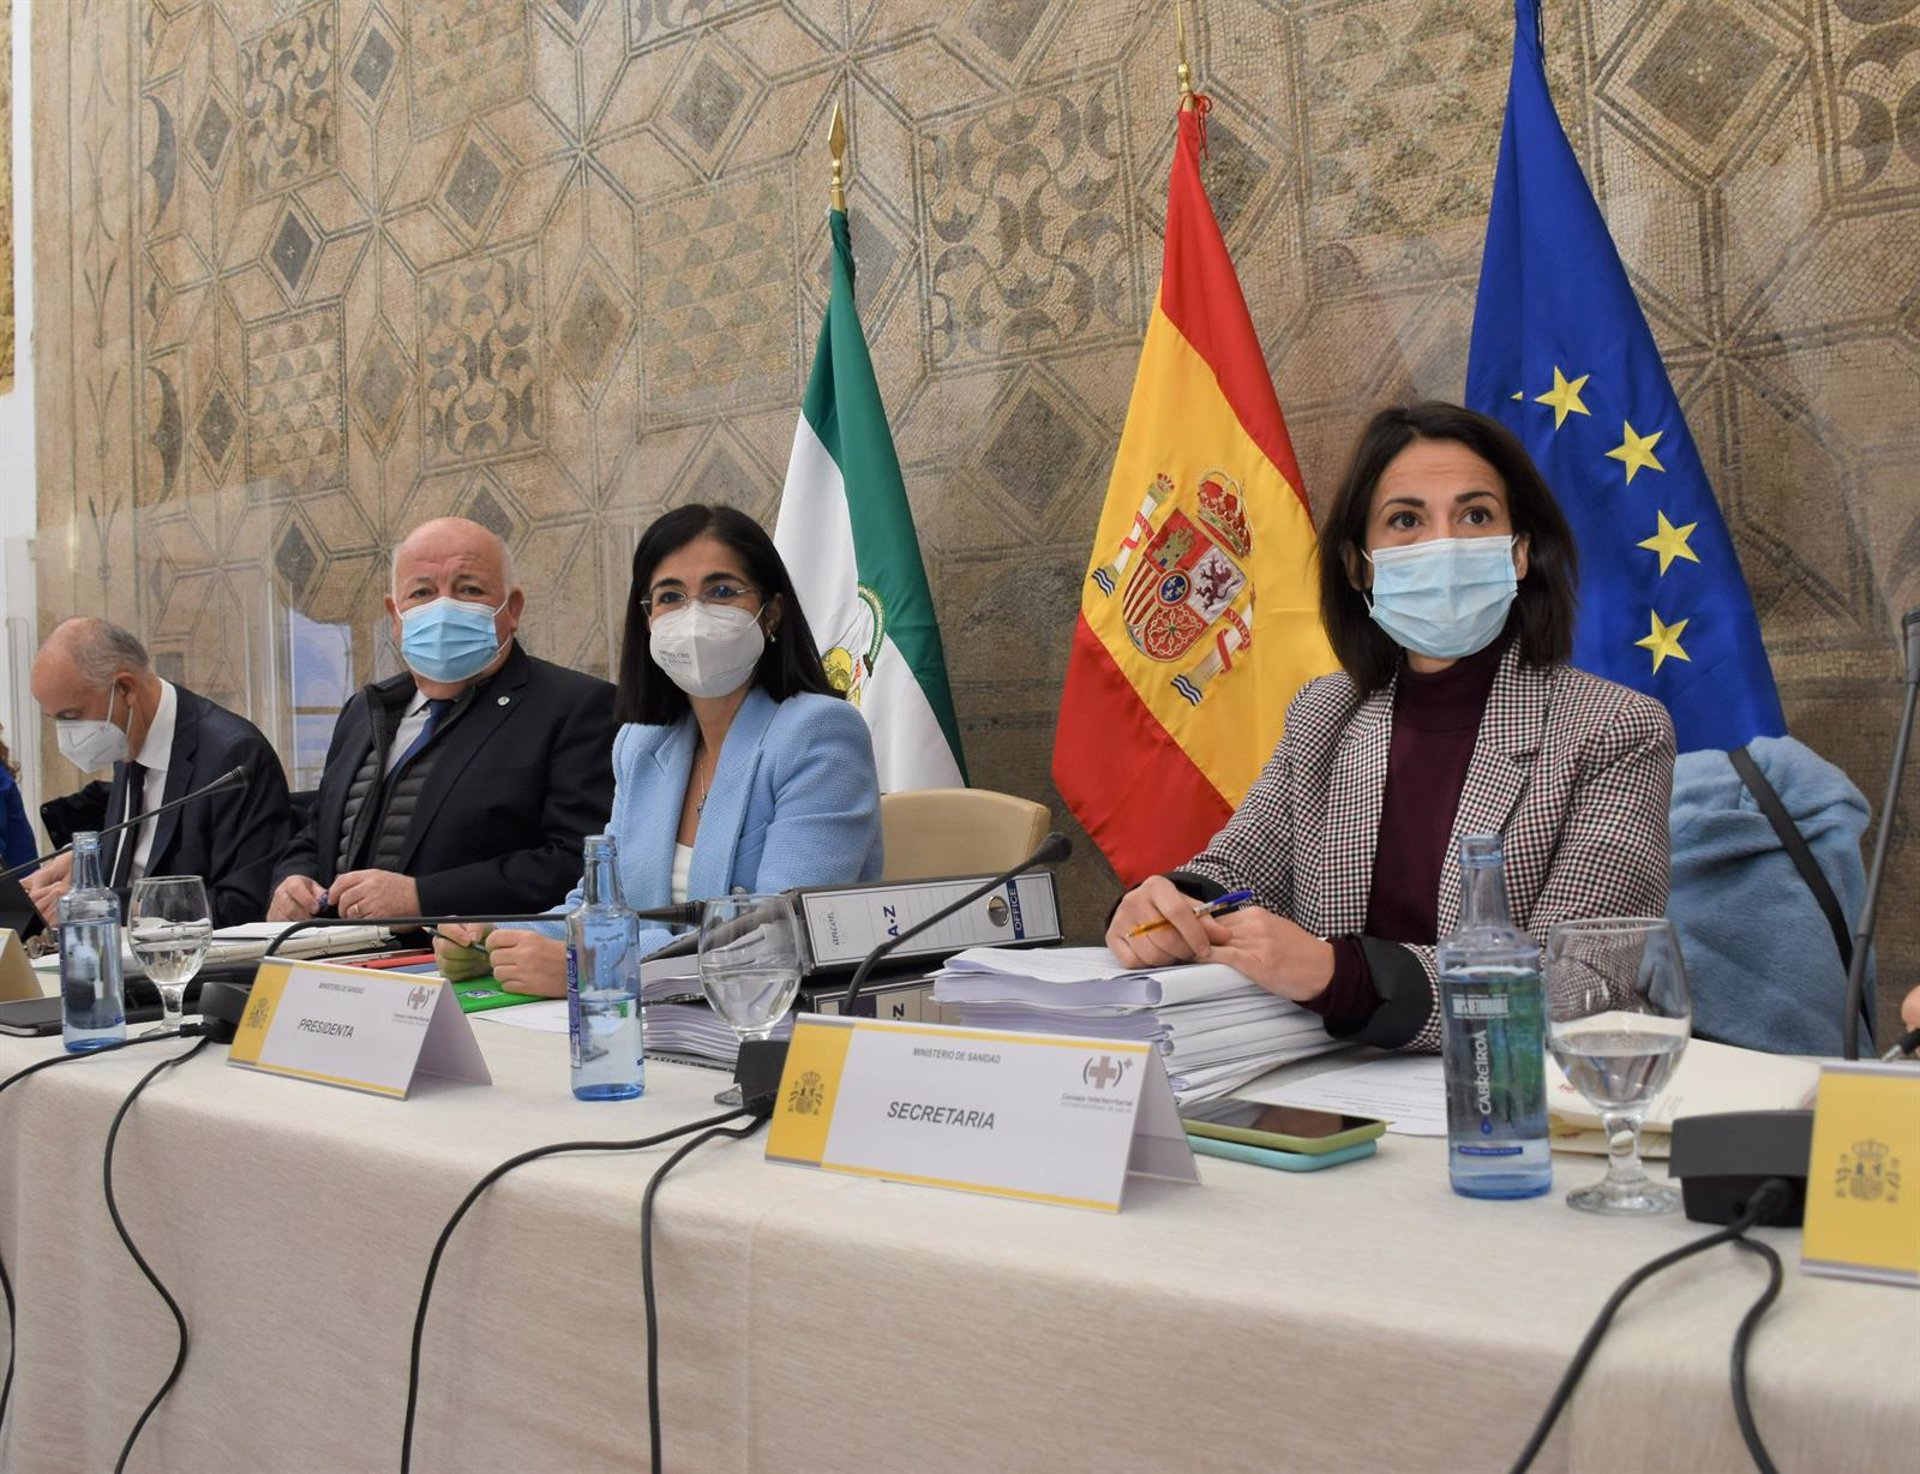 Darias descarta la vacunación obligatoria en España: "Nuestra situación es diferente"